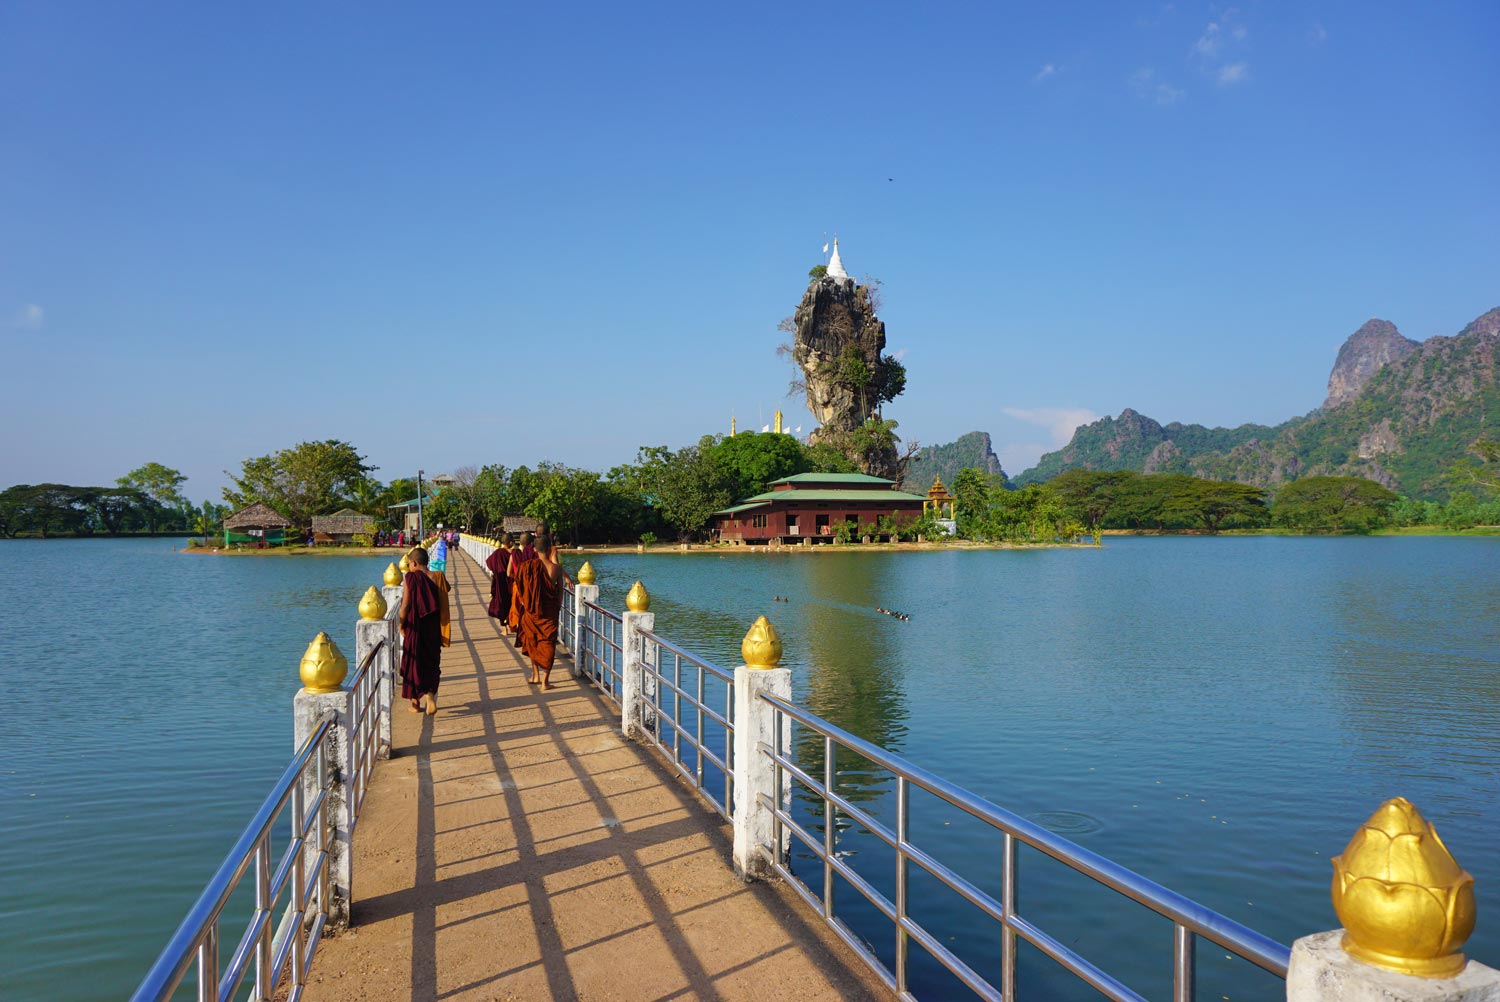 Kyaut-Ka-Latt-Pagoda-Hpa-An-Myanmar